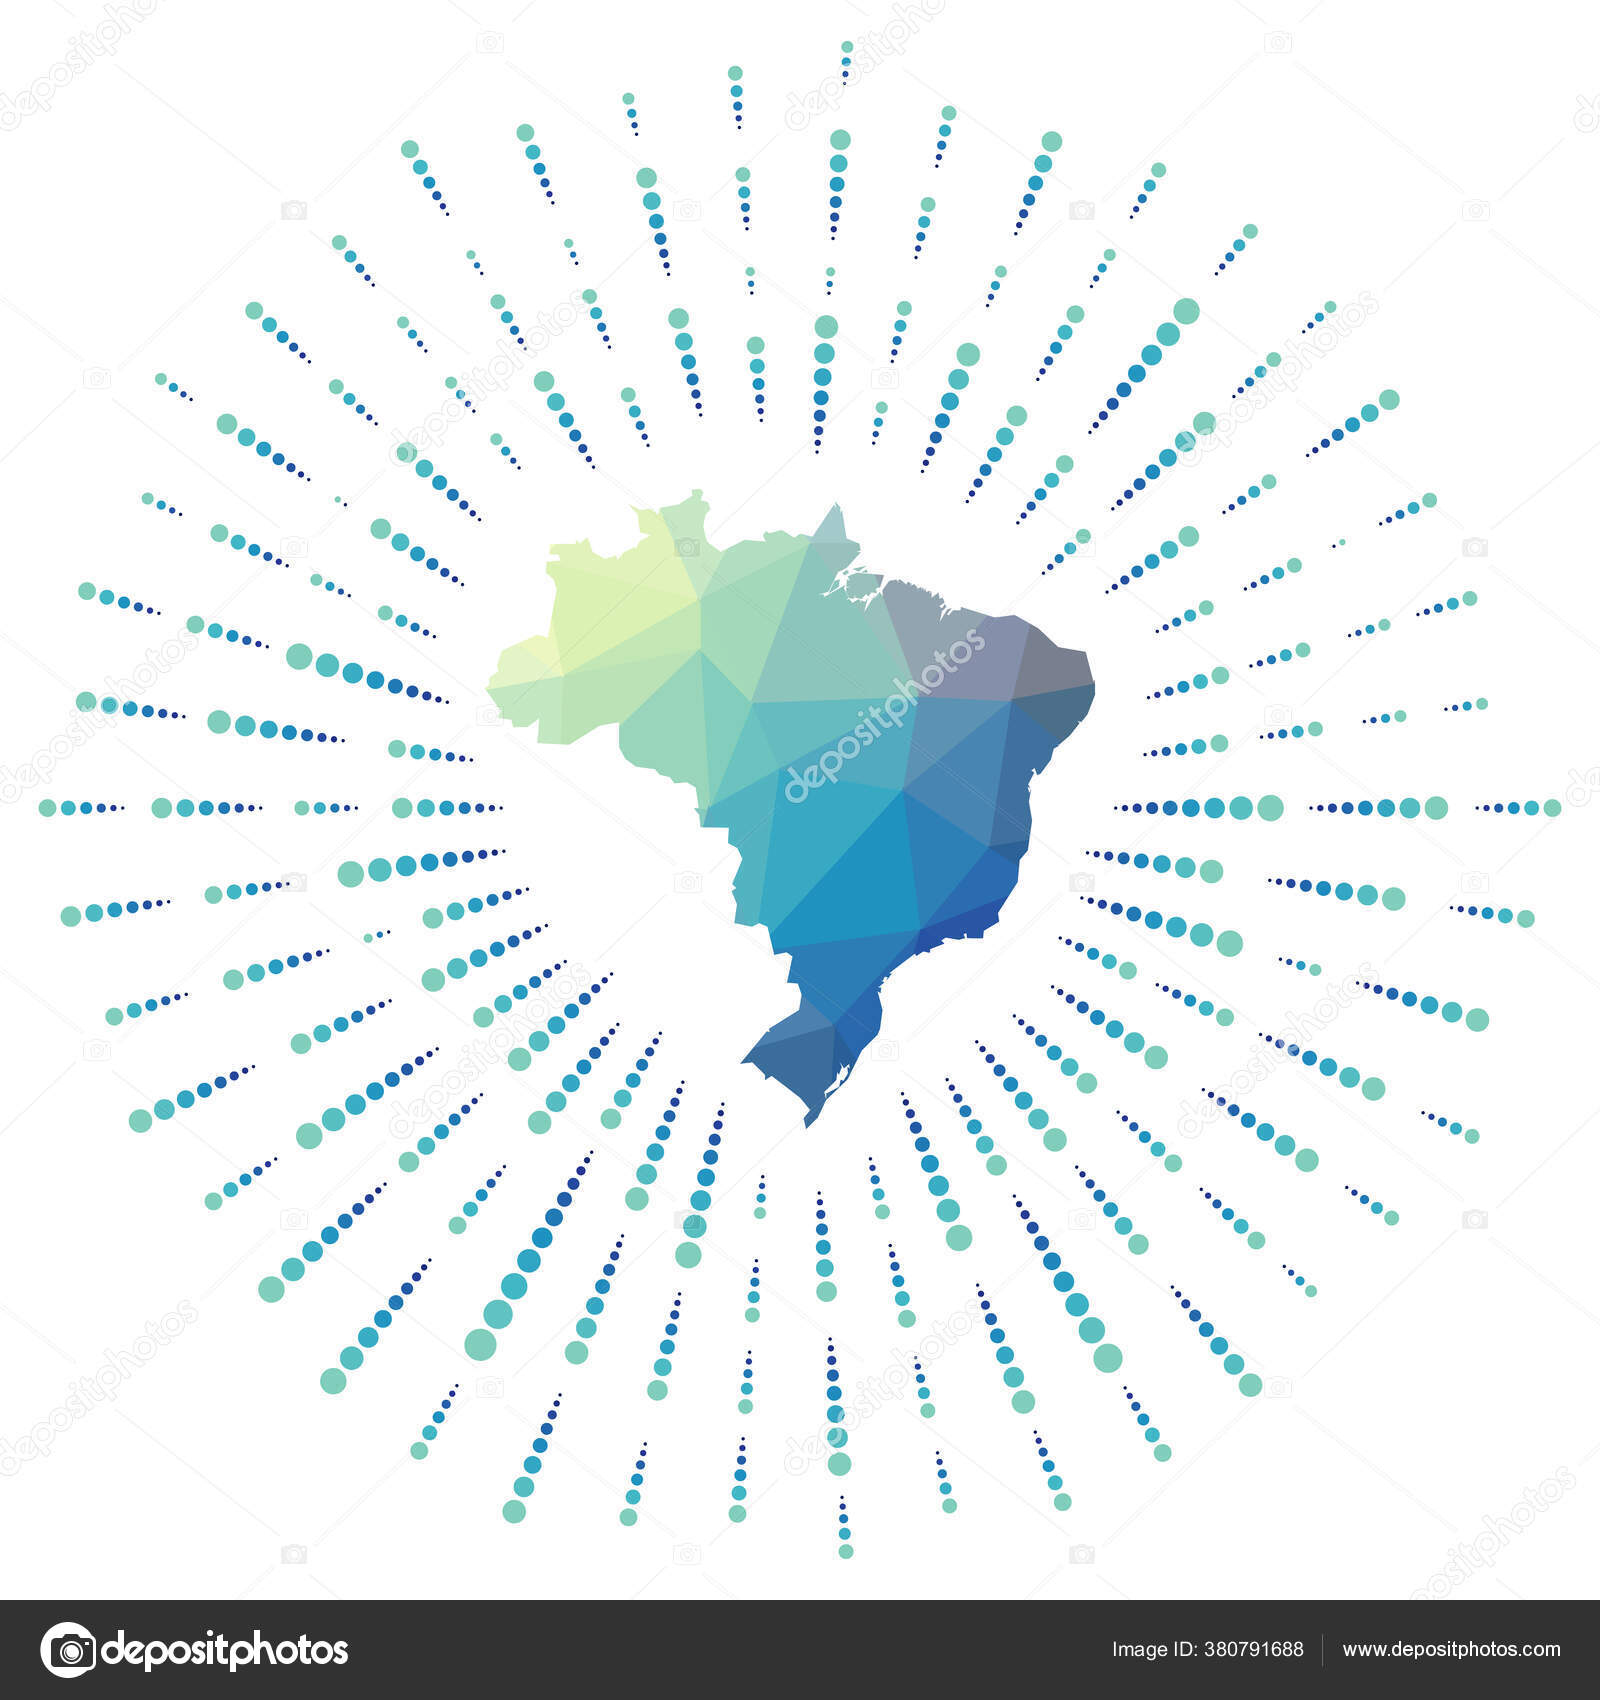 https://st4.depositphotos.com/4278755/38079/v/1600/depositphotos_380791688-stock-illustration-shape-of-brazil-polygonal-sunburst.jpg